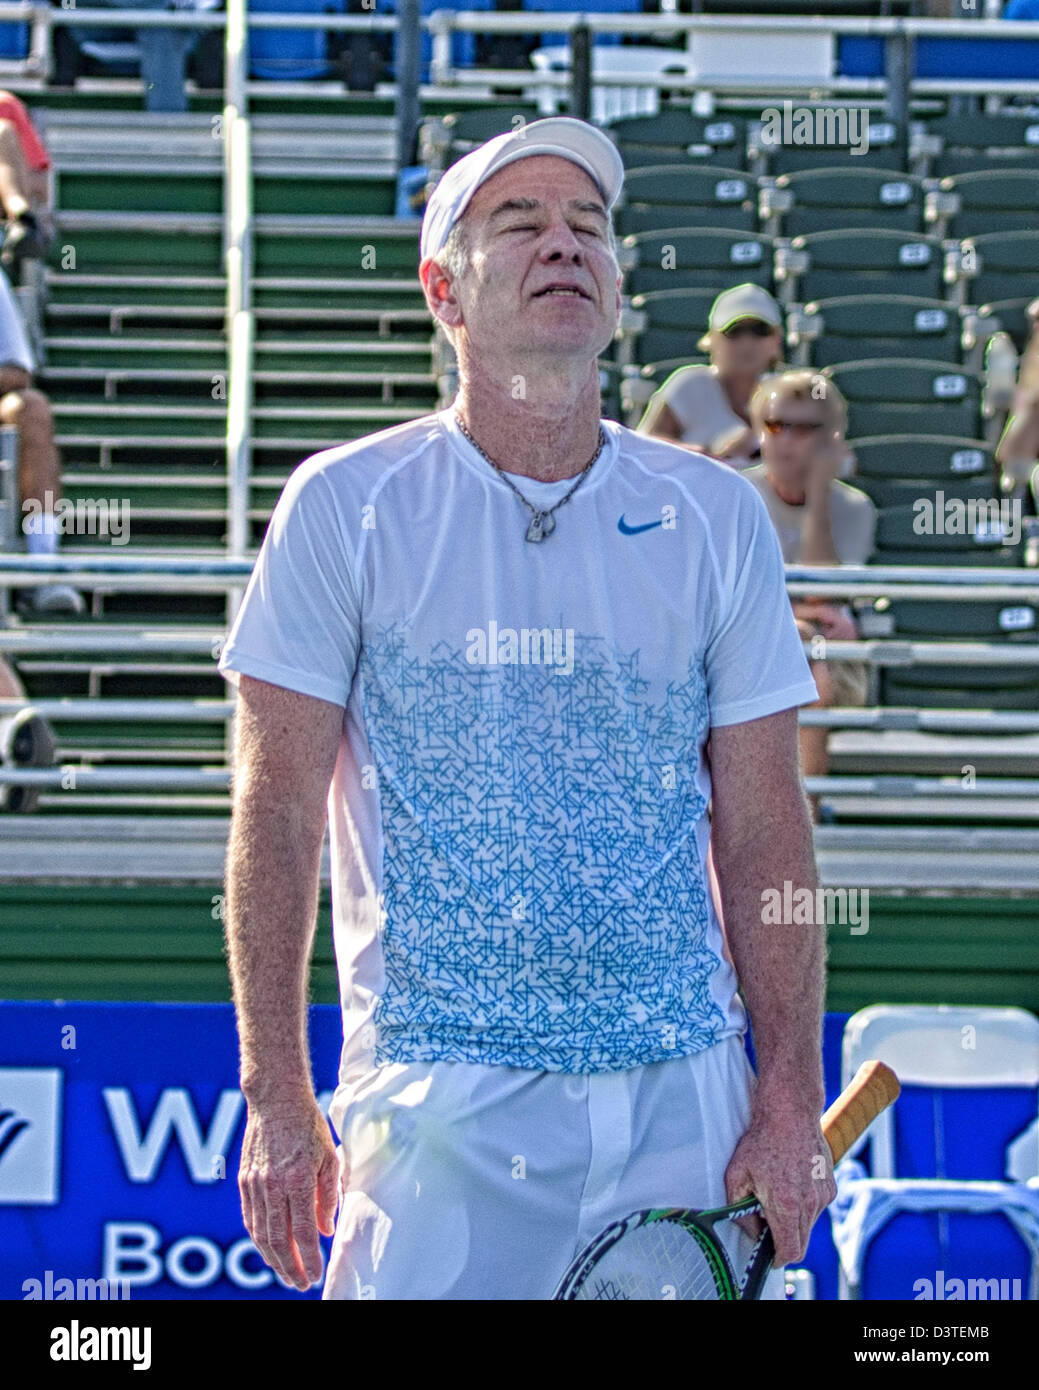 Delray Beach, Florida, USA. Feb 24, 2013. La légende du tennis et de la  renommée John McEnroe a été défait à l'ATP Champions Tour final 6-4, 6-2 par  Carlos Moya qui est